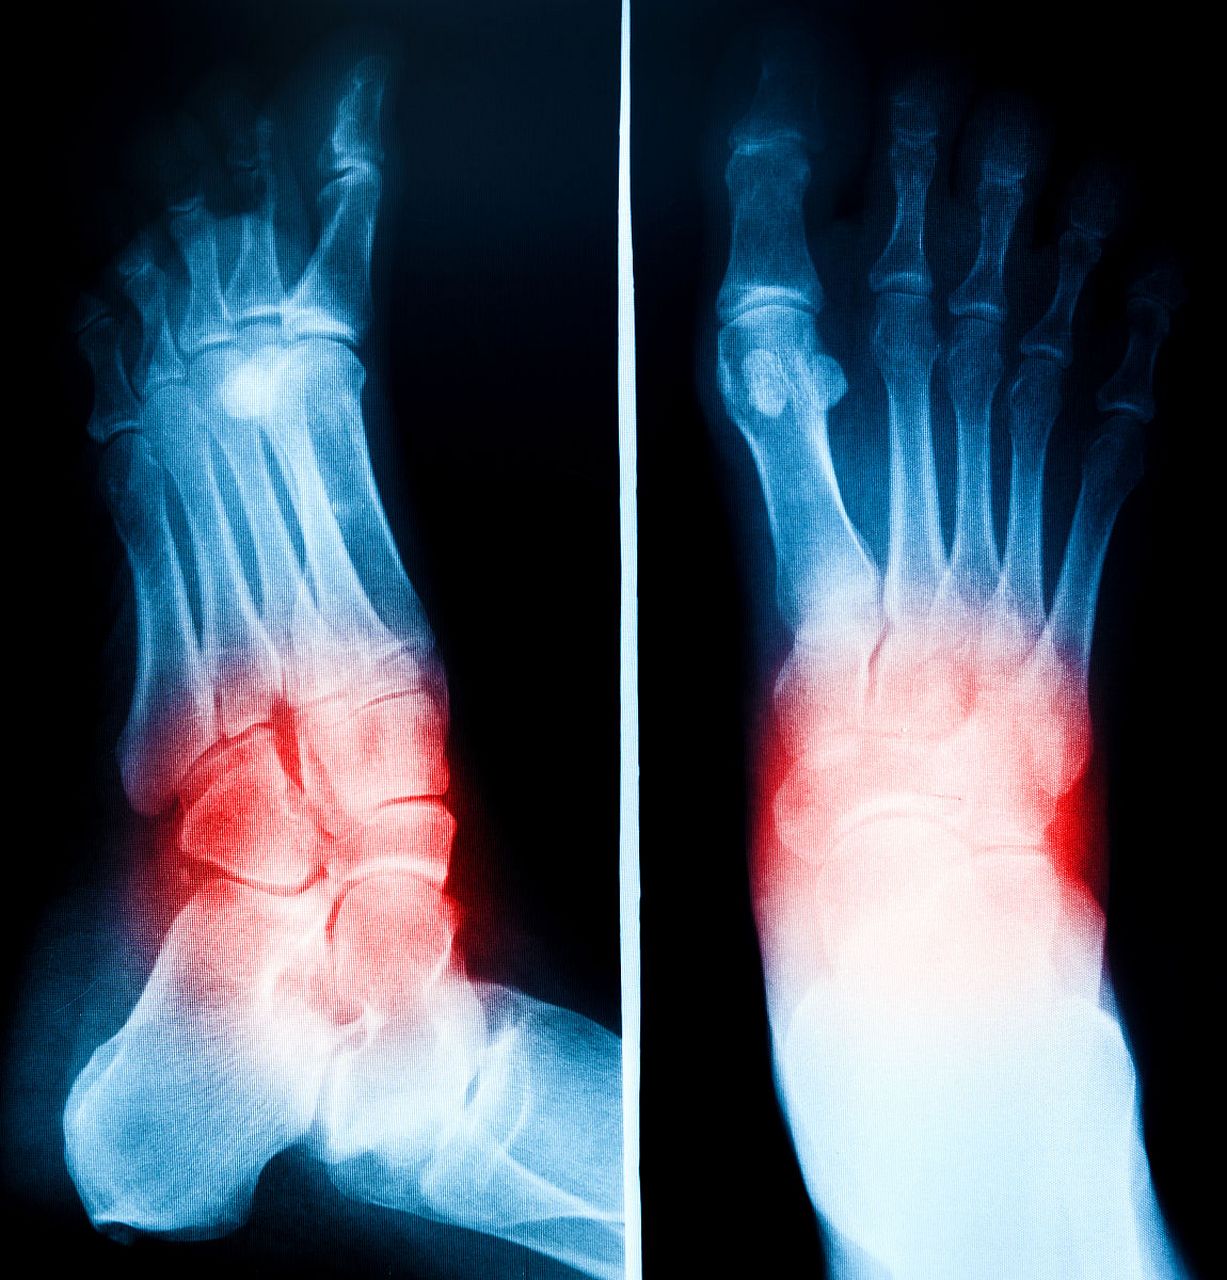 骨刺是骨骼上的异常骨增生,常常发生在关节或骨头结合处,可能导致疼痛